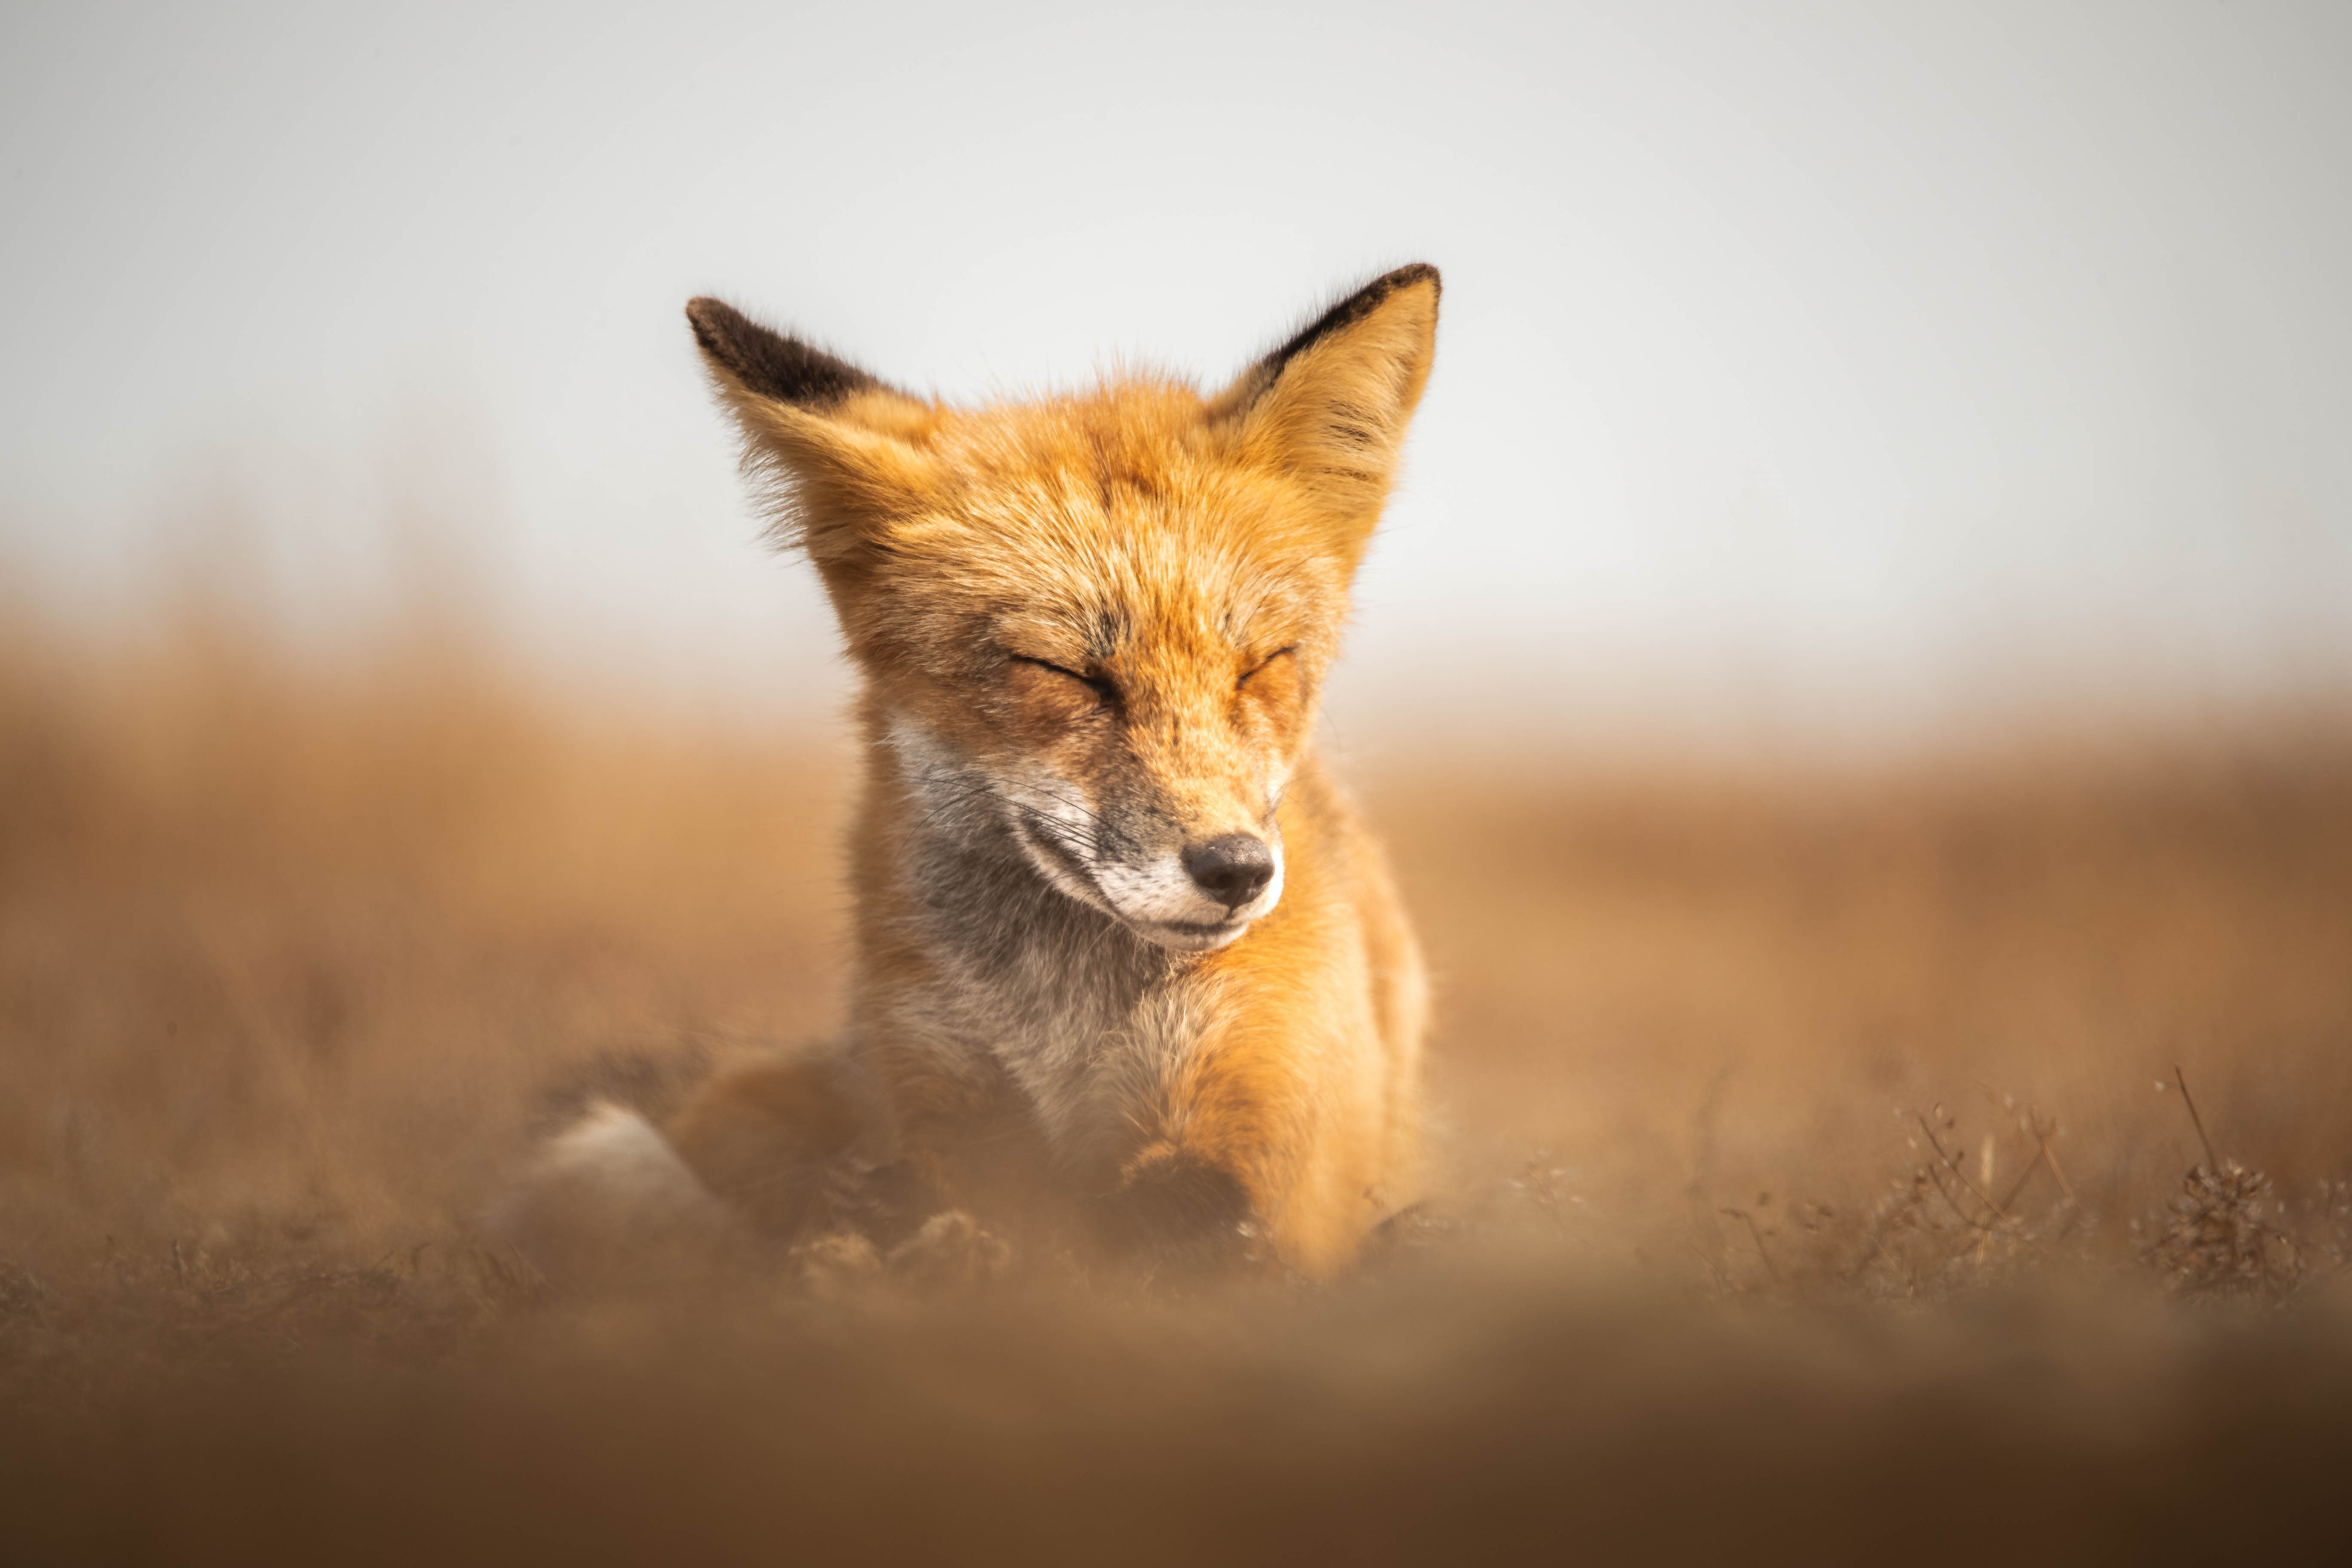 Wildlife photography of a sleeping fox in Washington